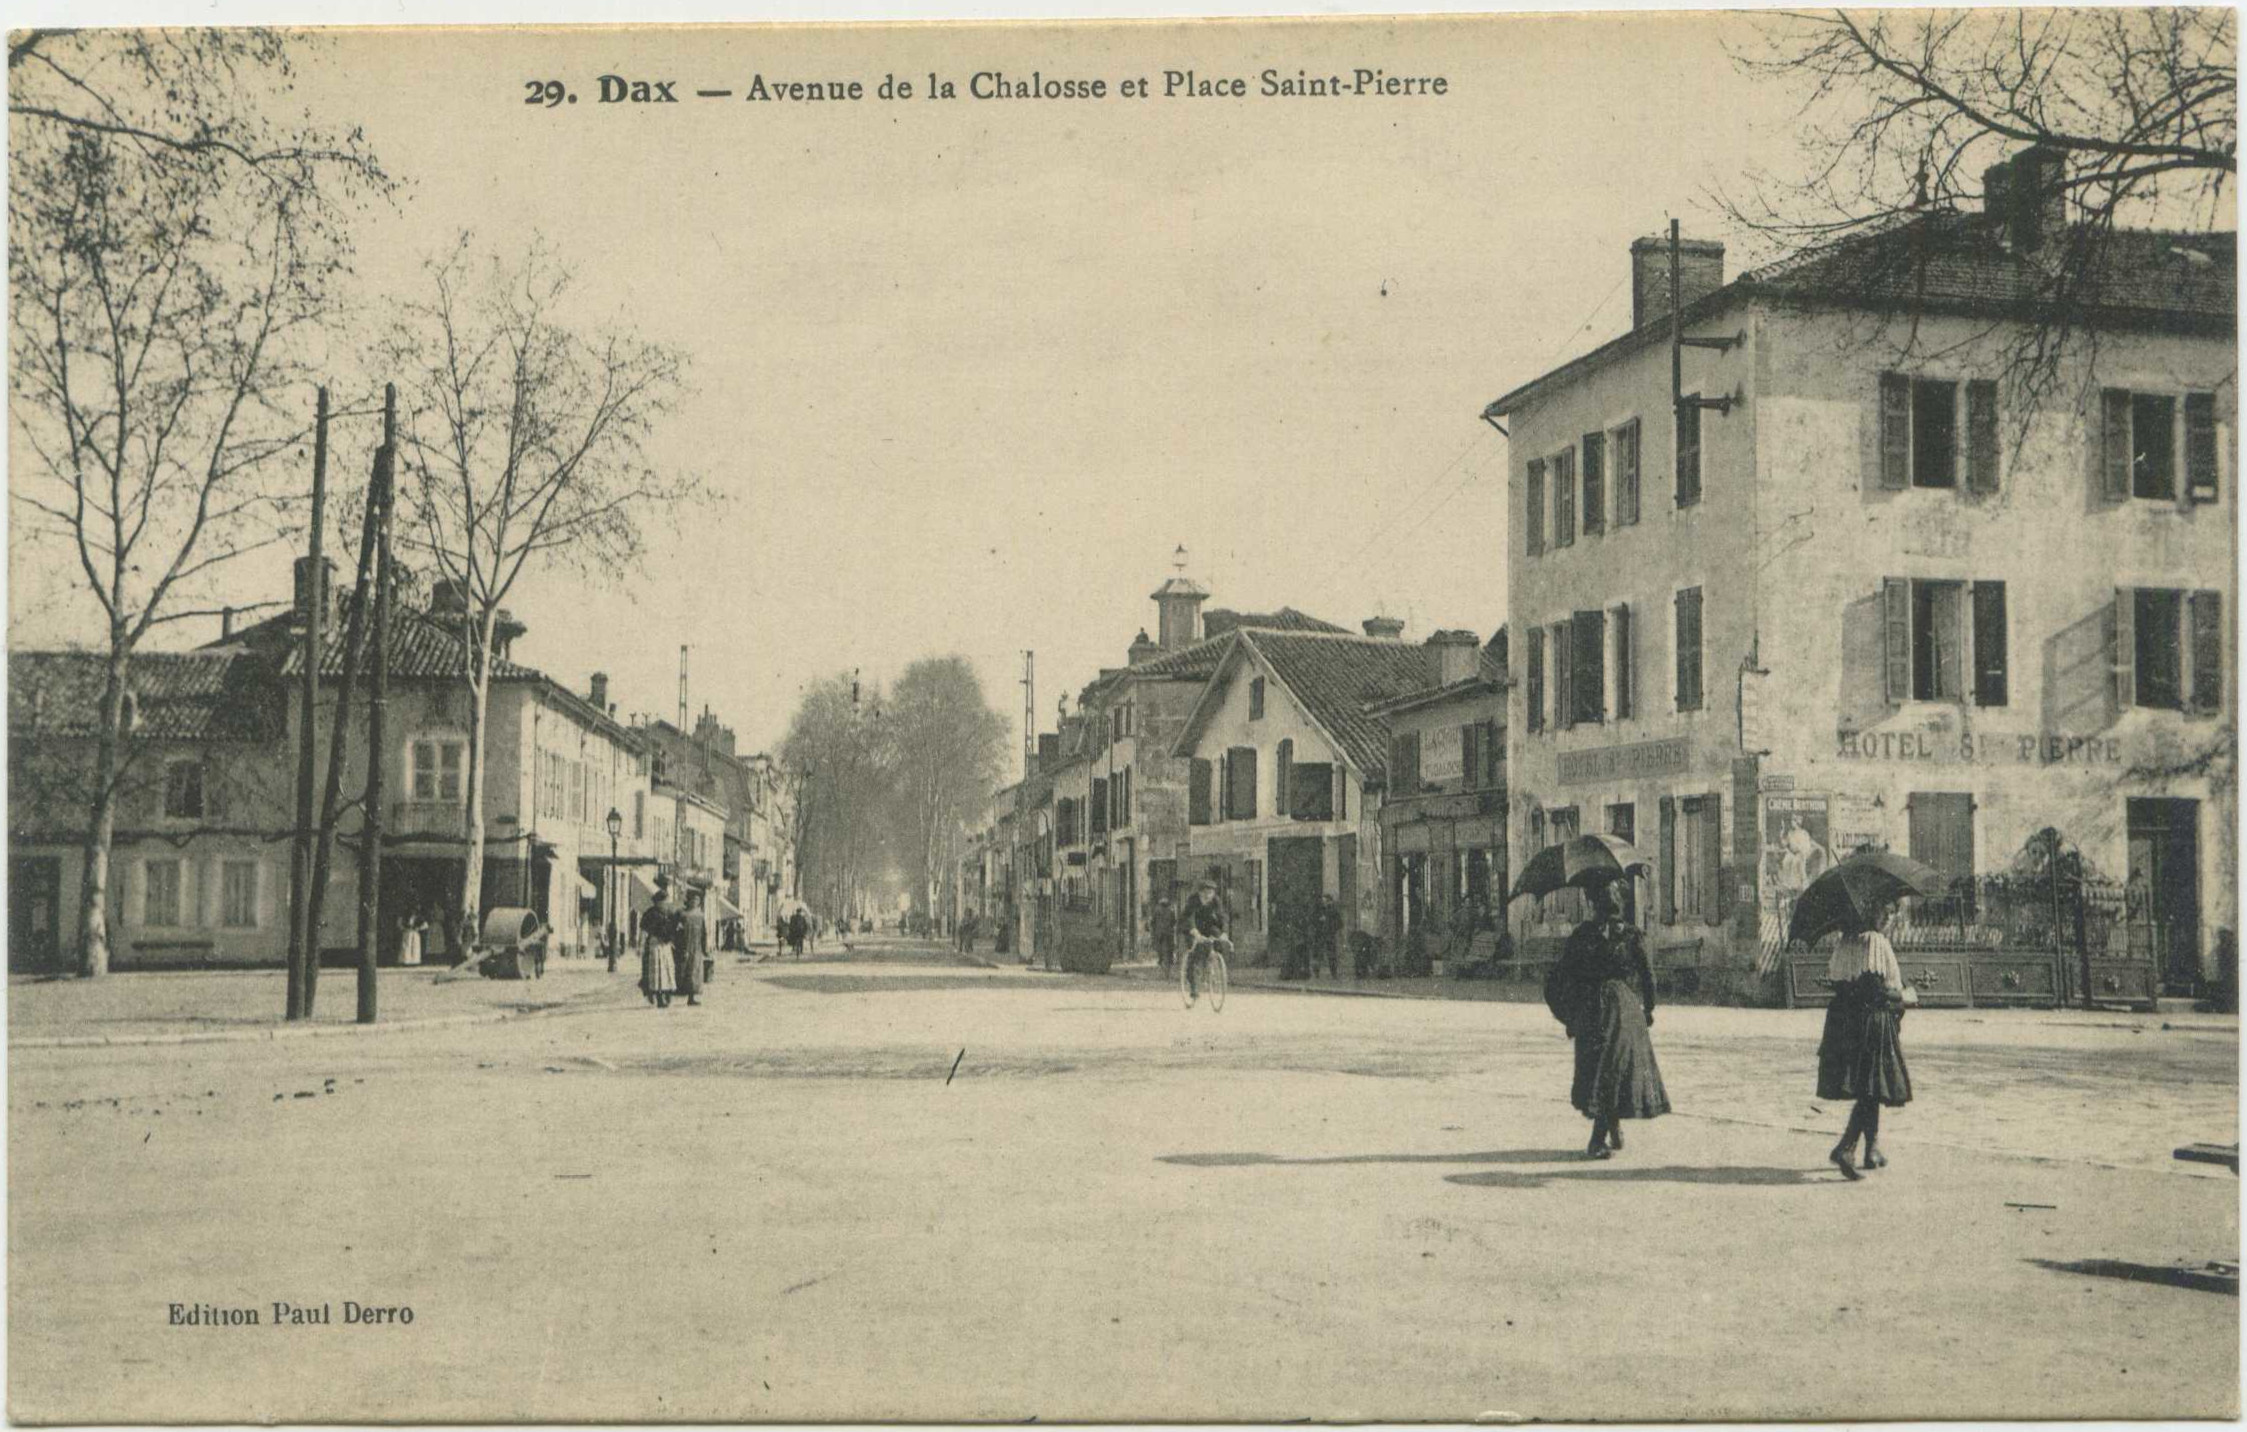 Dax - Avenue de la Chalosse et Place Saint-Pierre